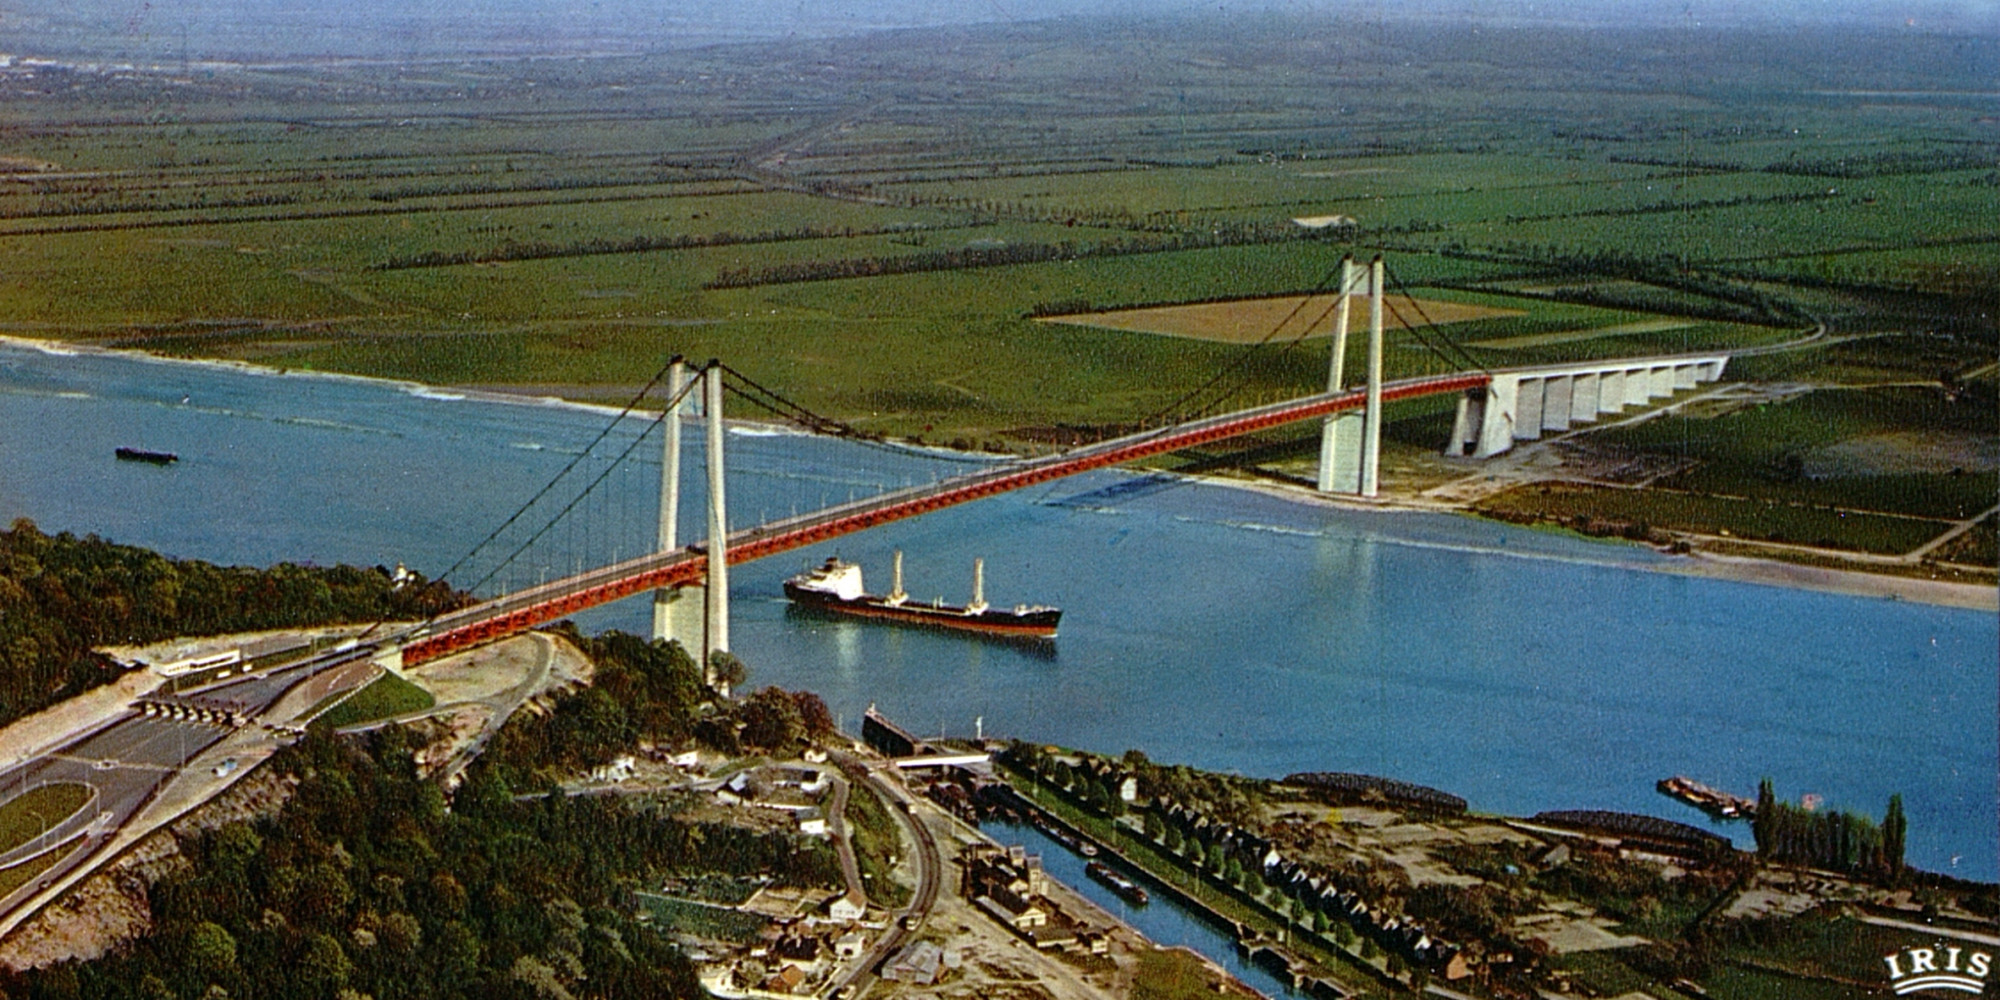 Ponts de Tancarville et Normandie. Une prolongation de concession envisagée